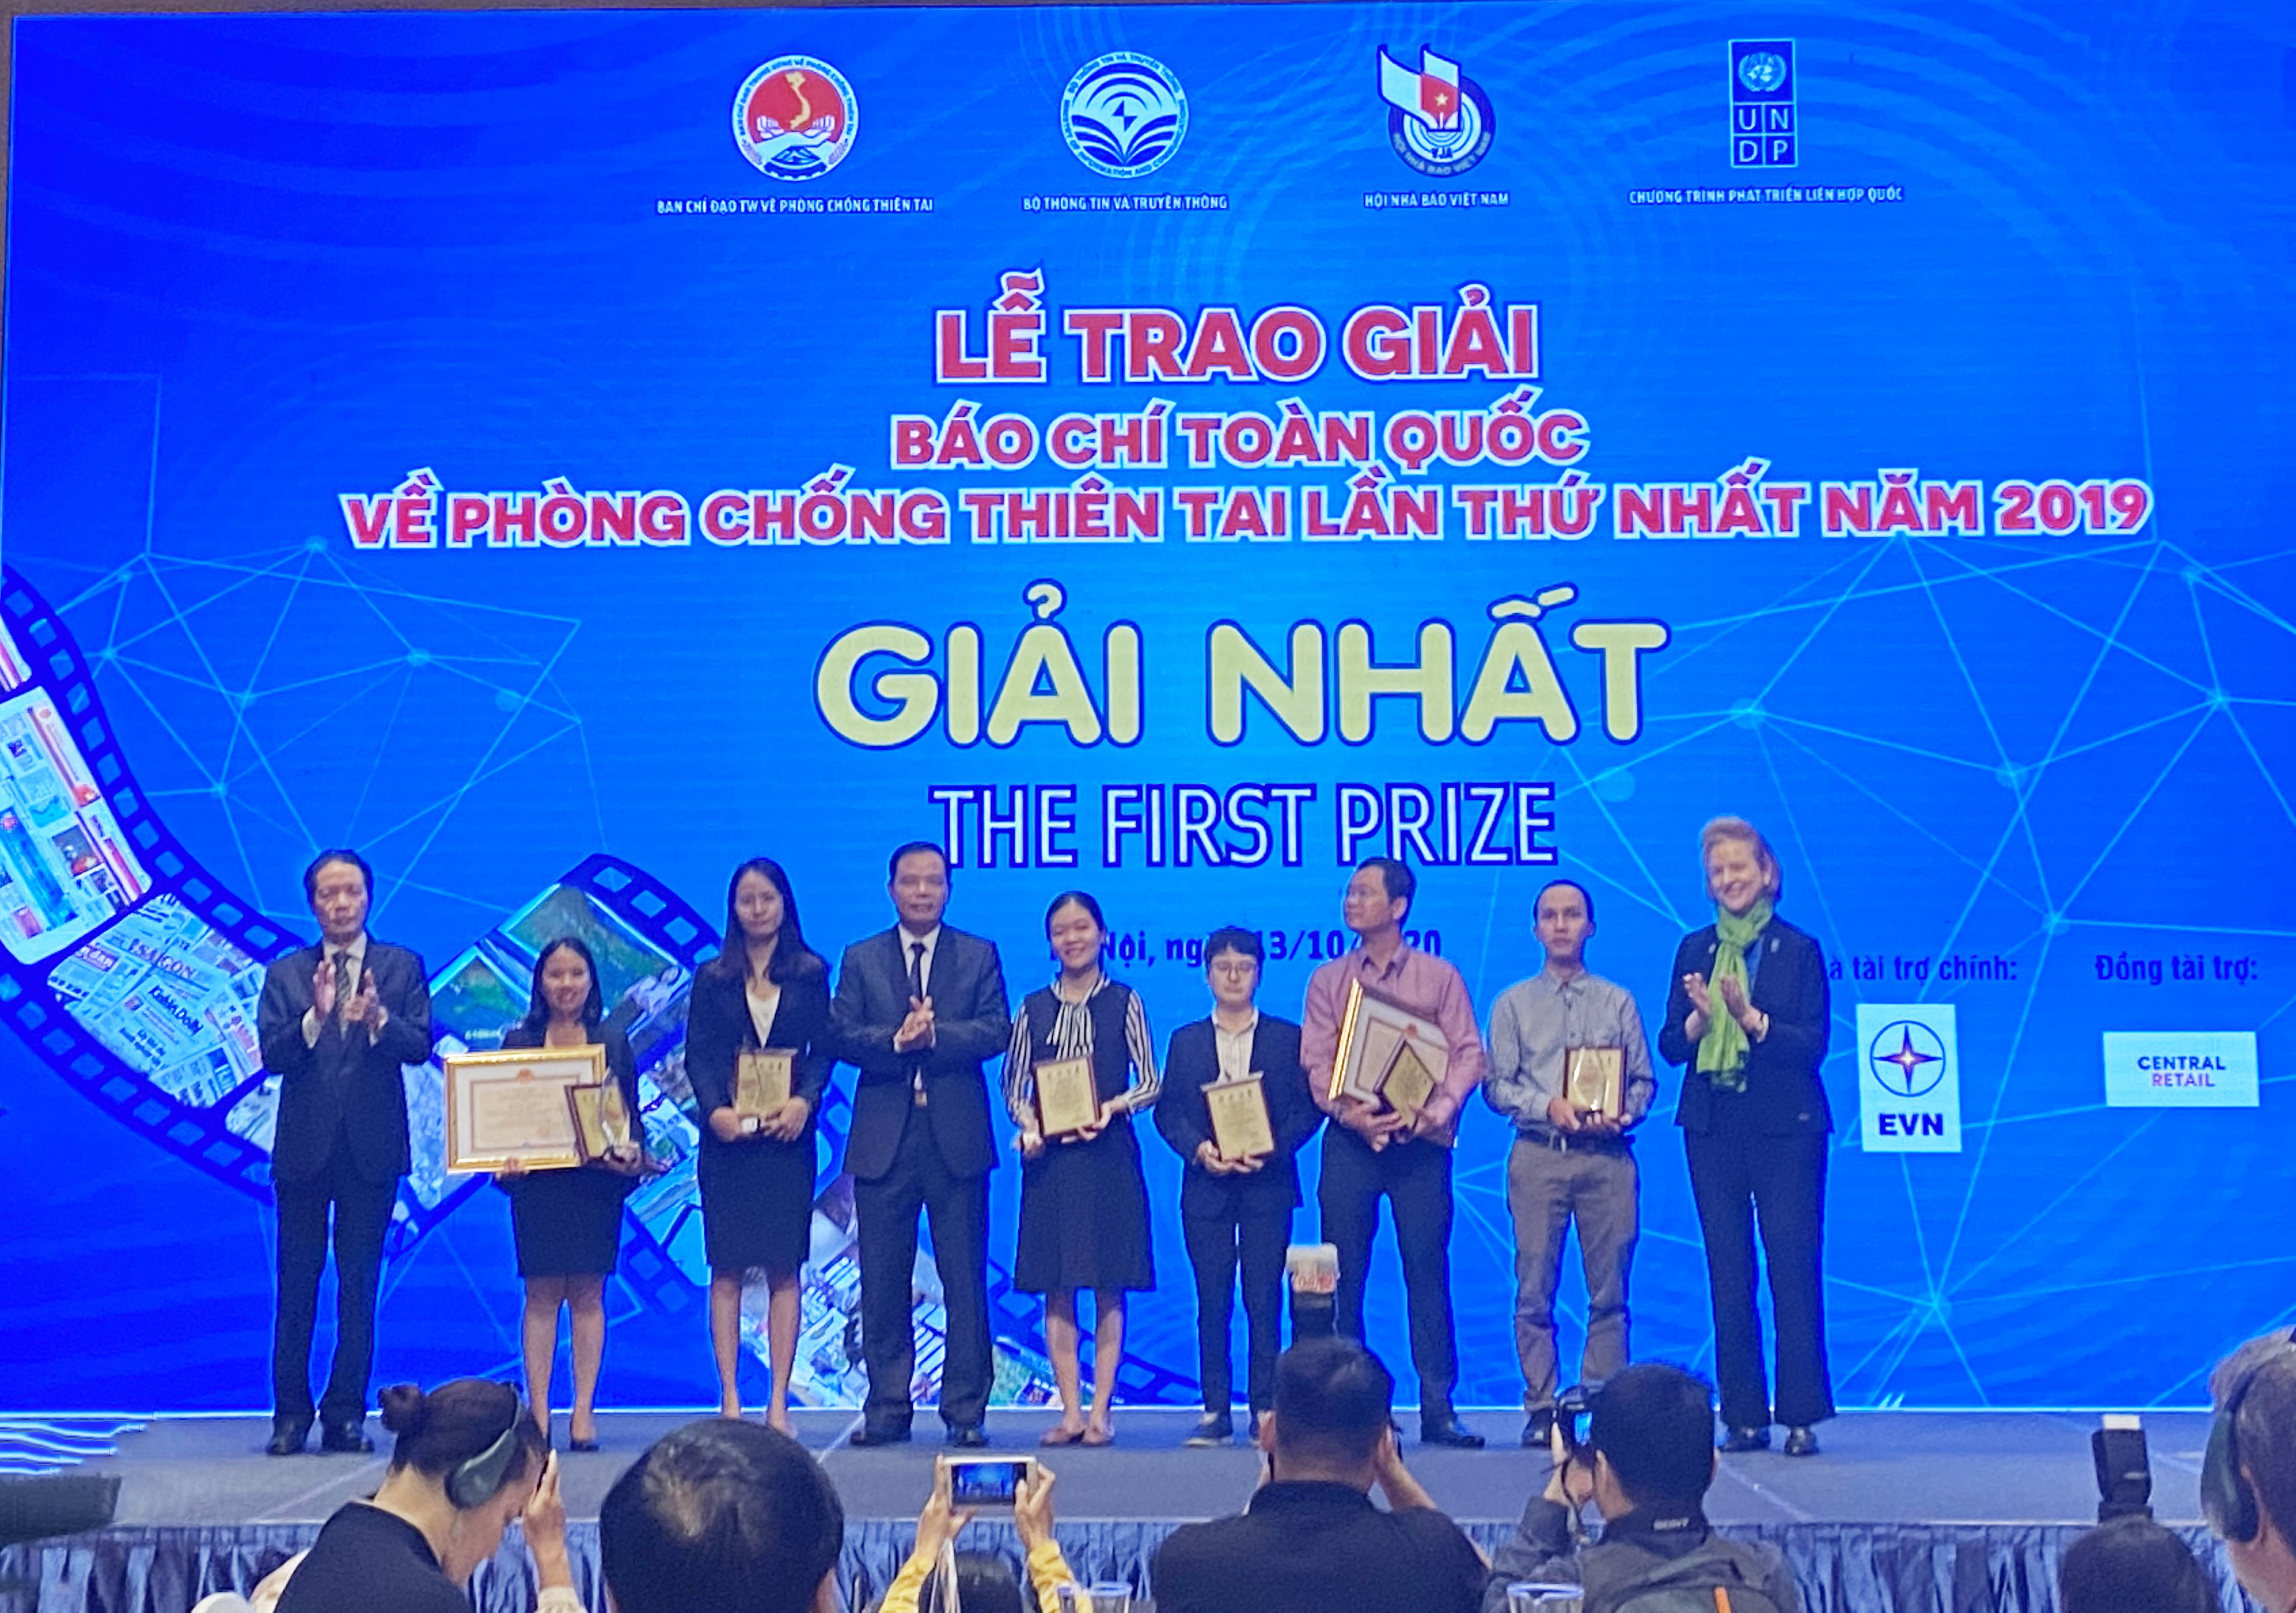 Bộ trưởng Bộ Nông nghiệp và Phát triển nông thôn Nguyễn Xuân Cường trao Giấy khen cho các nhóm tác giả đoạt giải Nhất Giải báo chí toàn quốc về phòng chống thiên tai lần thứ nhất